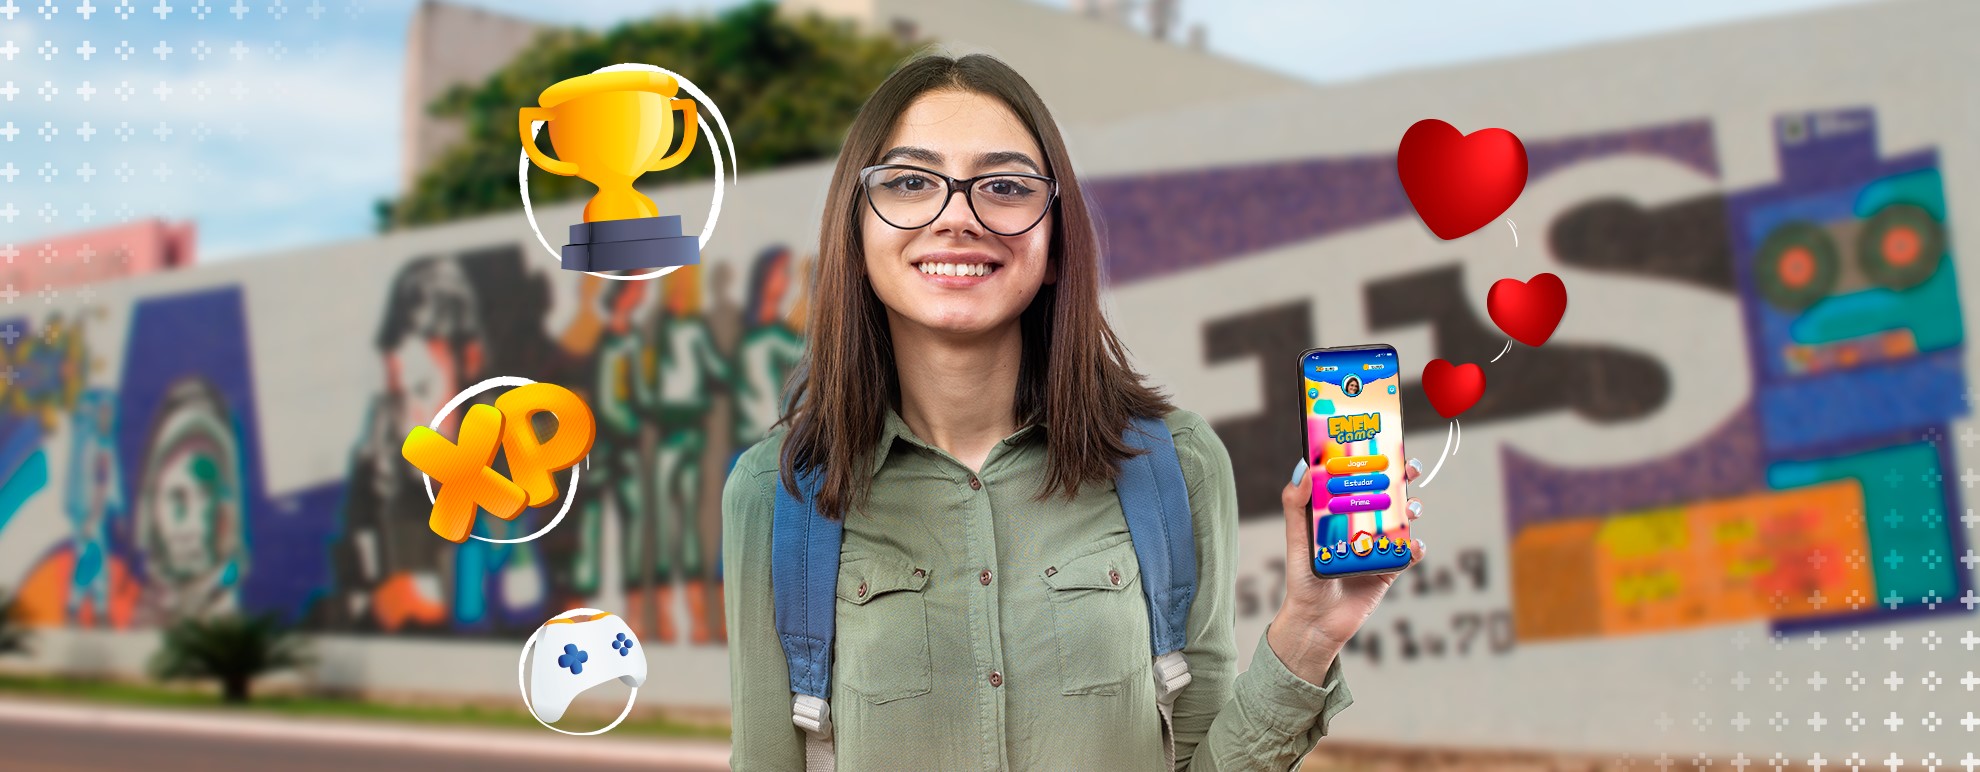 imagem de ume menina, usando óculos e mochila, e segurando um celular com a tela virada para a câmera, exibindo a tela do enem game